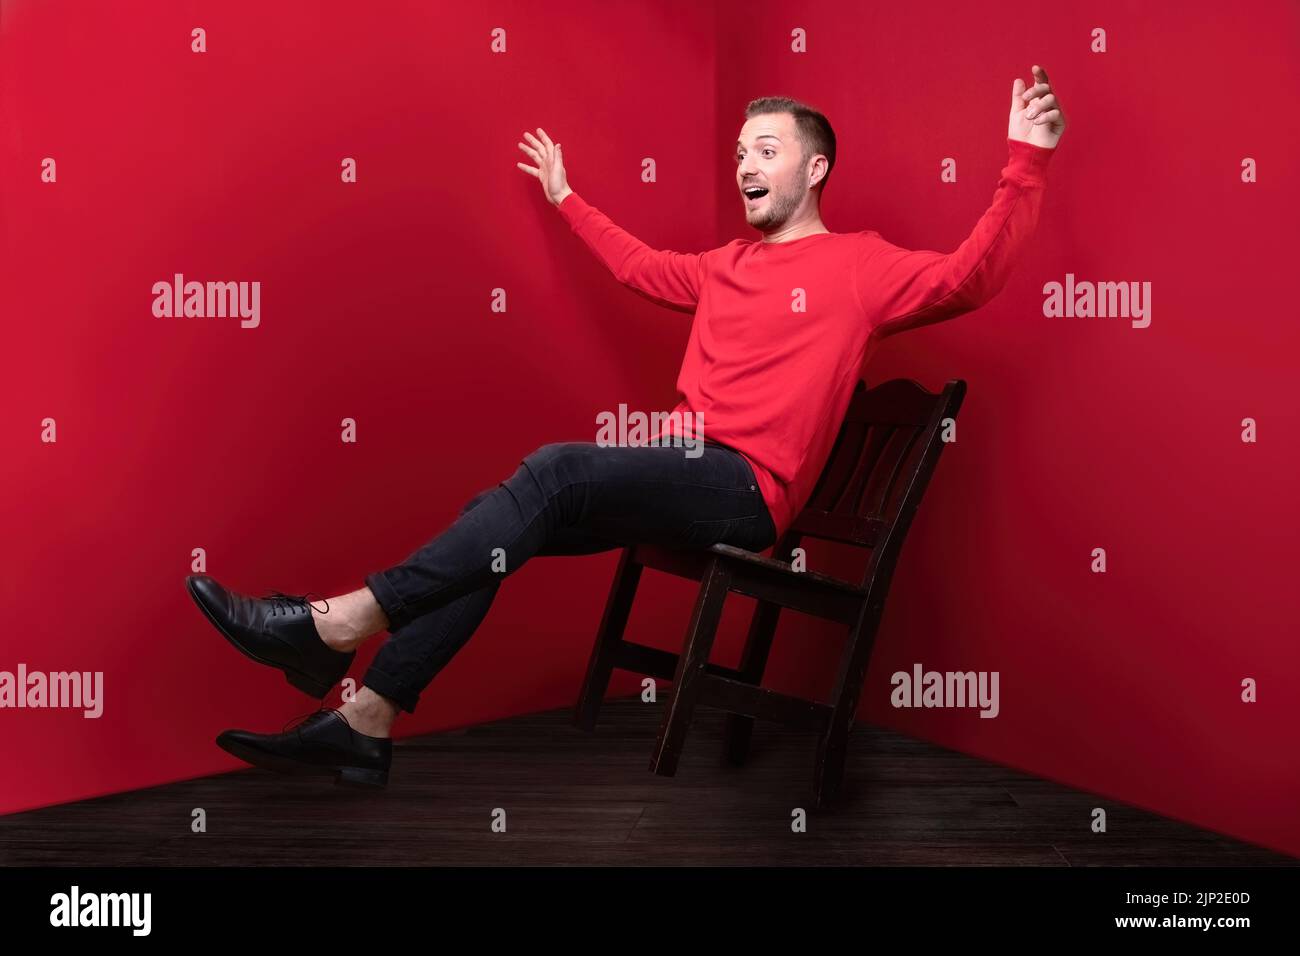 Un homme en rouge montrant la chute d'une chaise avec les mains larges ouvertes Banque D'Images